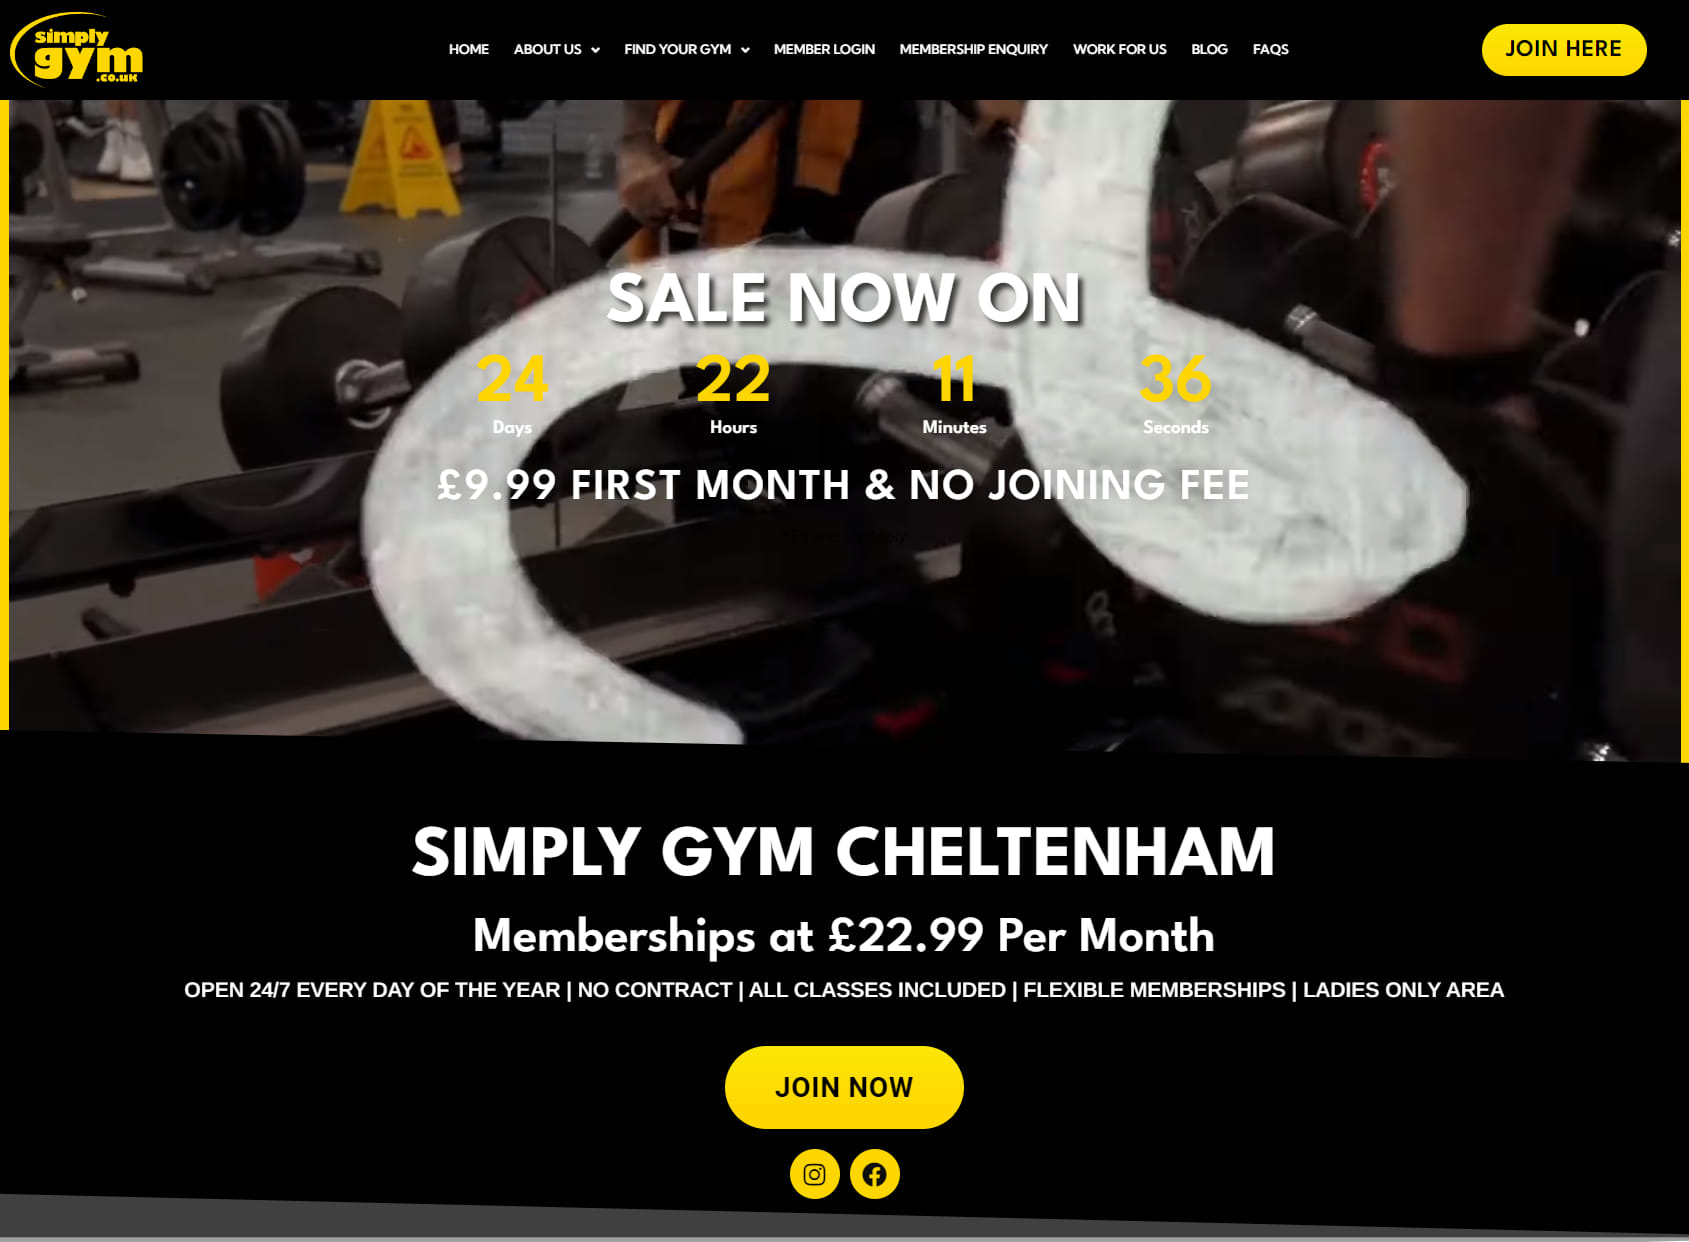 Simply Gym Cheltenham